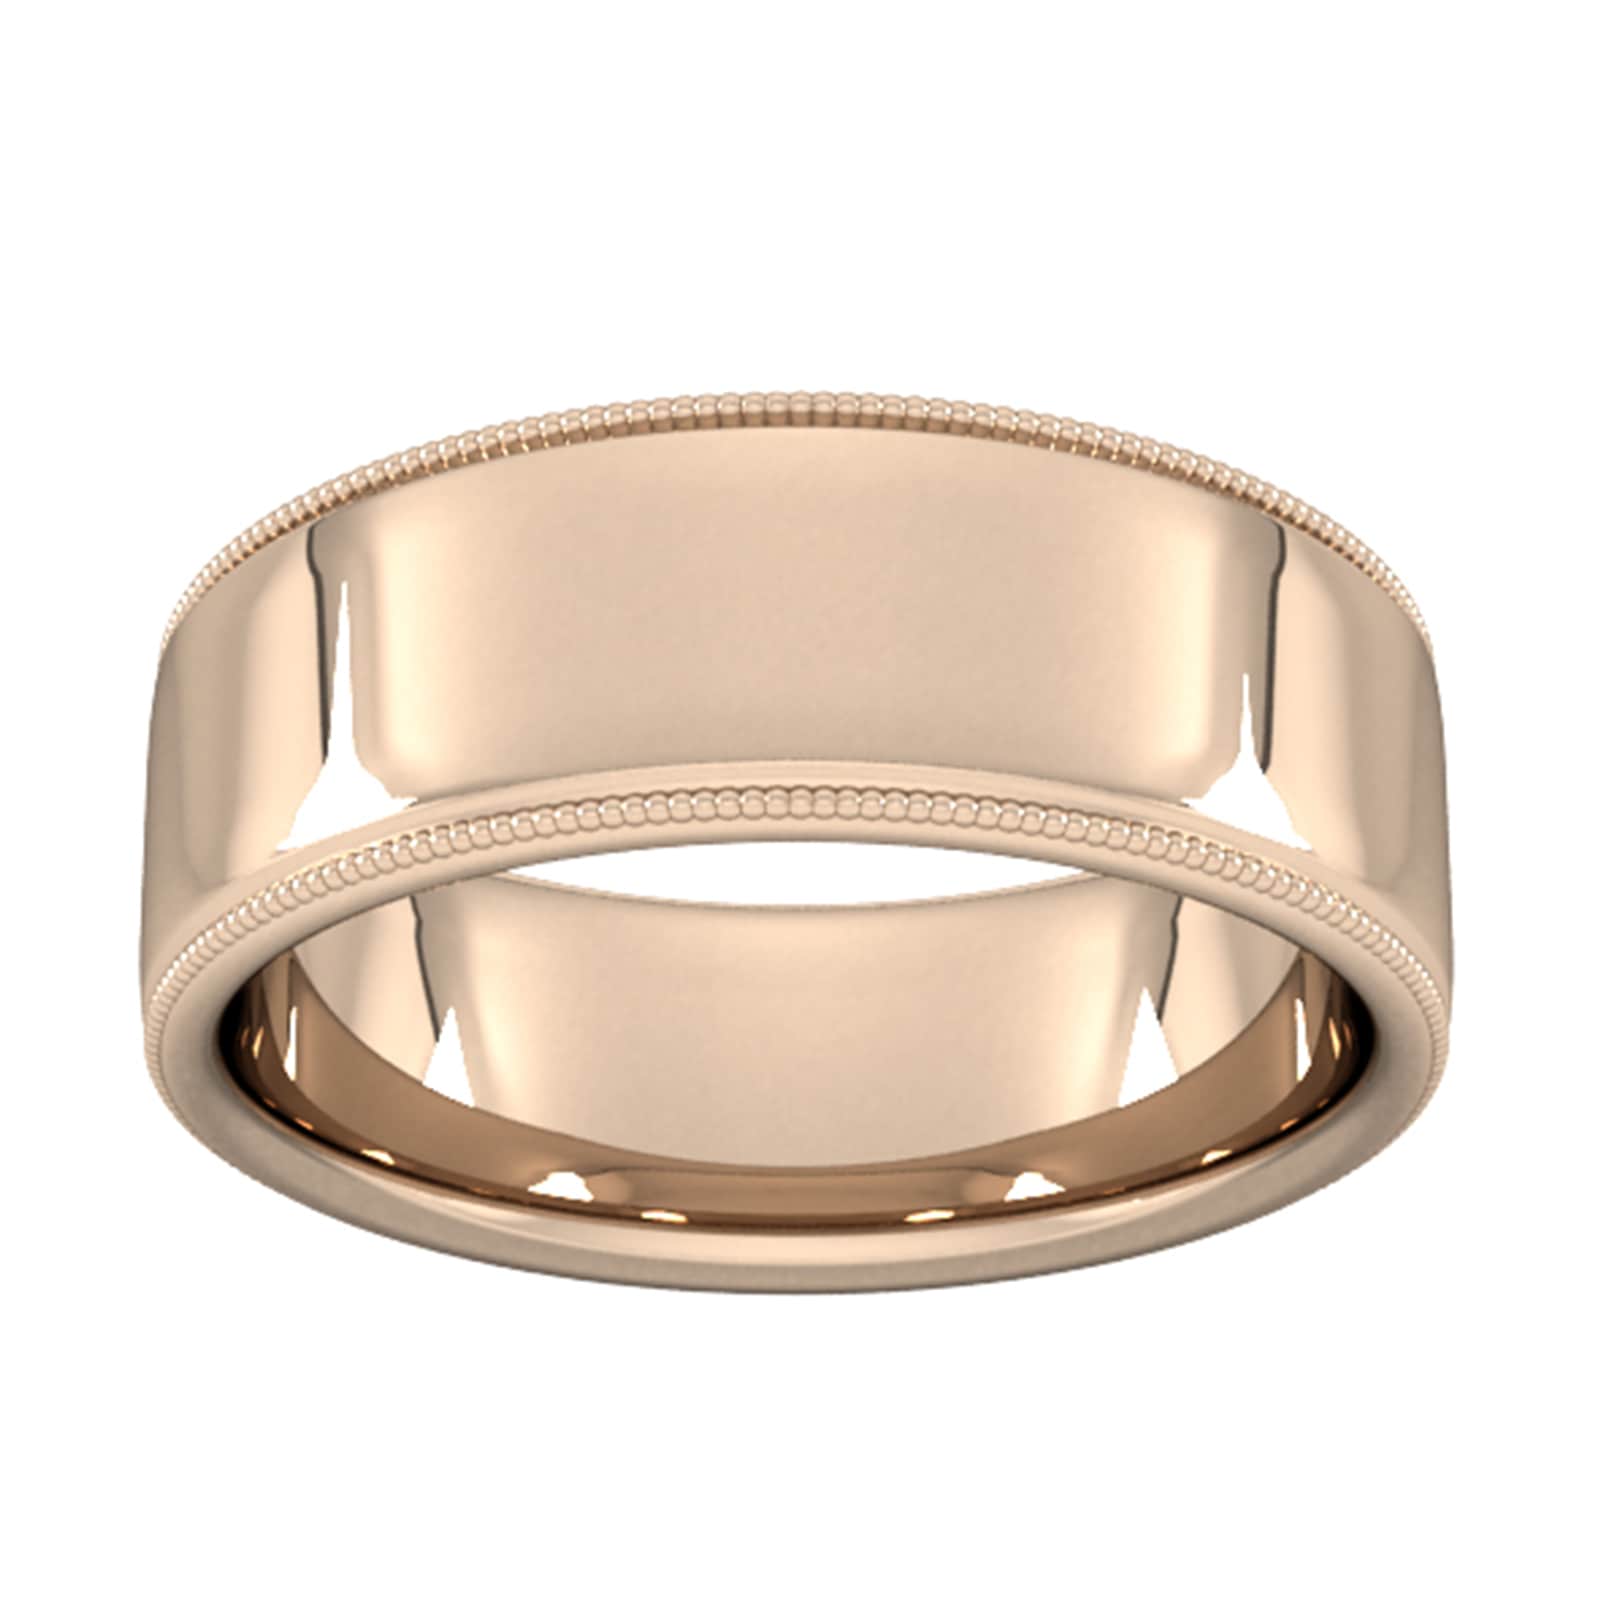 8mm Slight Court Heavy Milgrain Edge Wedding Ring In 18 Carat Rose Gold - Ring Size M